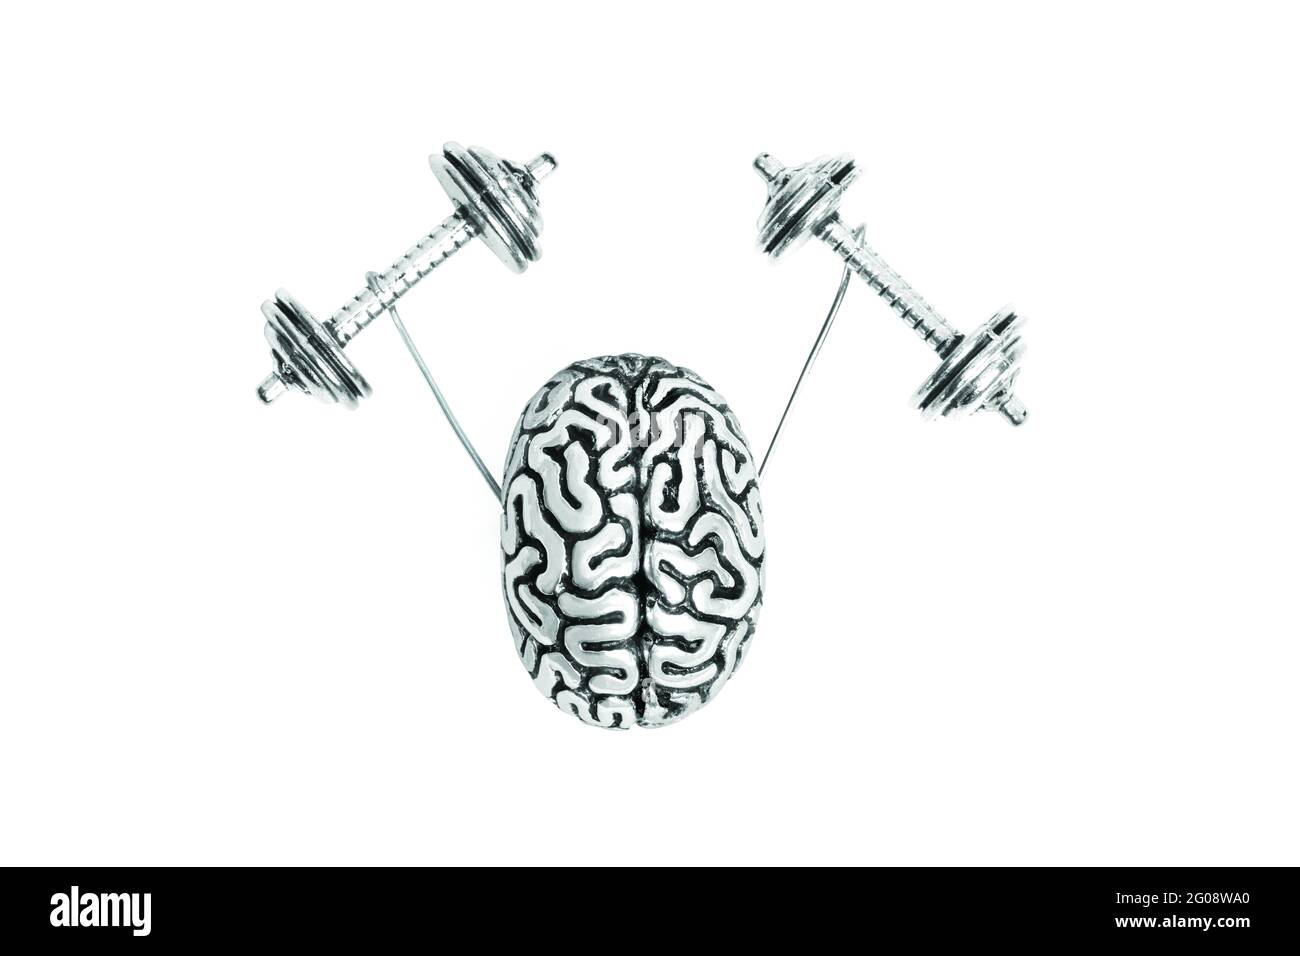 Kleine Stahlkopie des menschlichen Gehirns, die schwere Hanteln auf Weiß isoliert hebt. Kreatives Gehirntrainingskonzept. Stockfoto